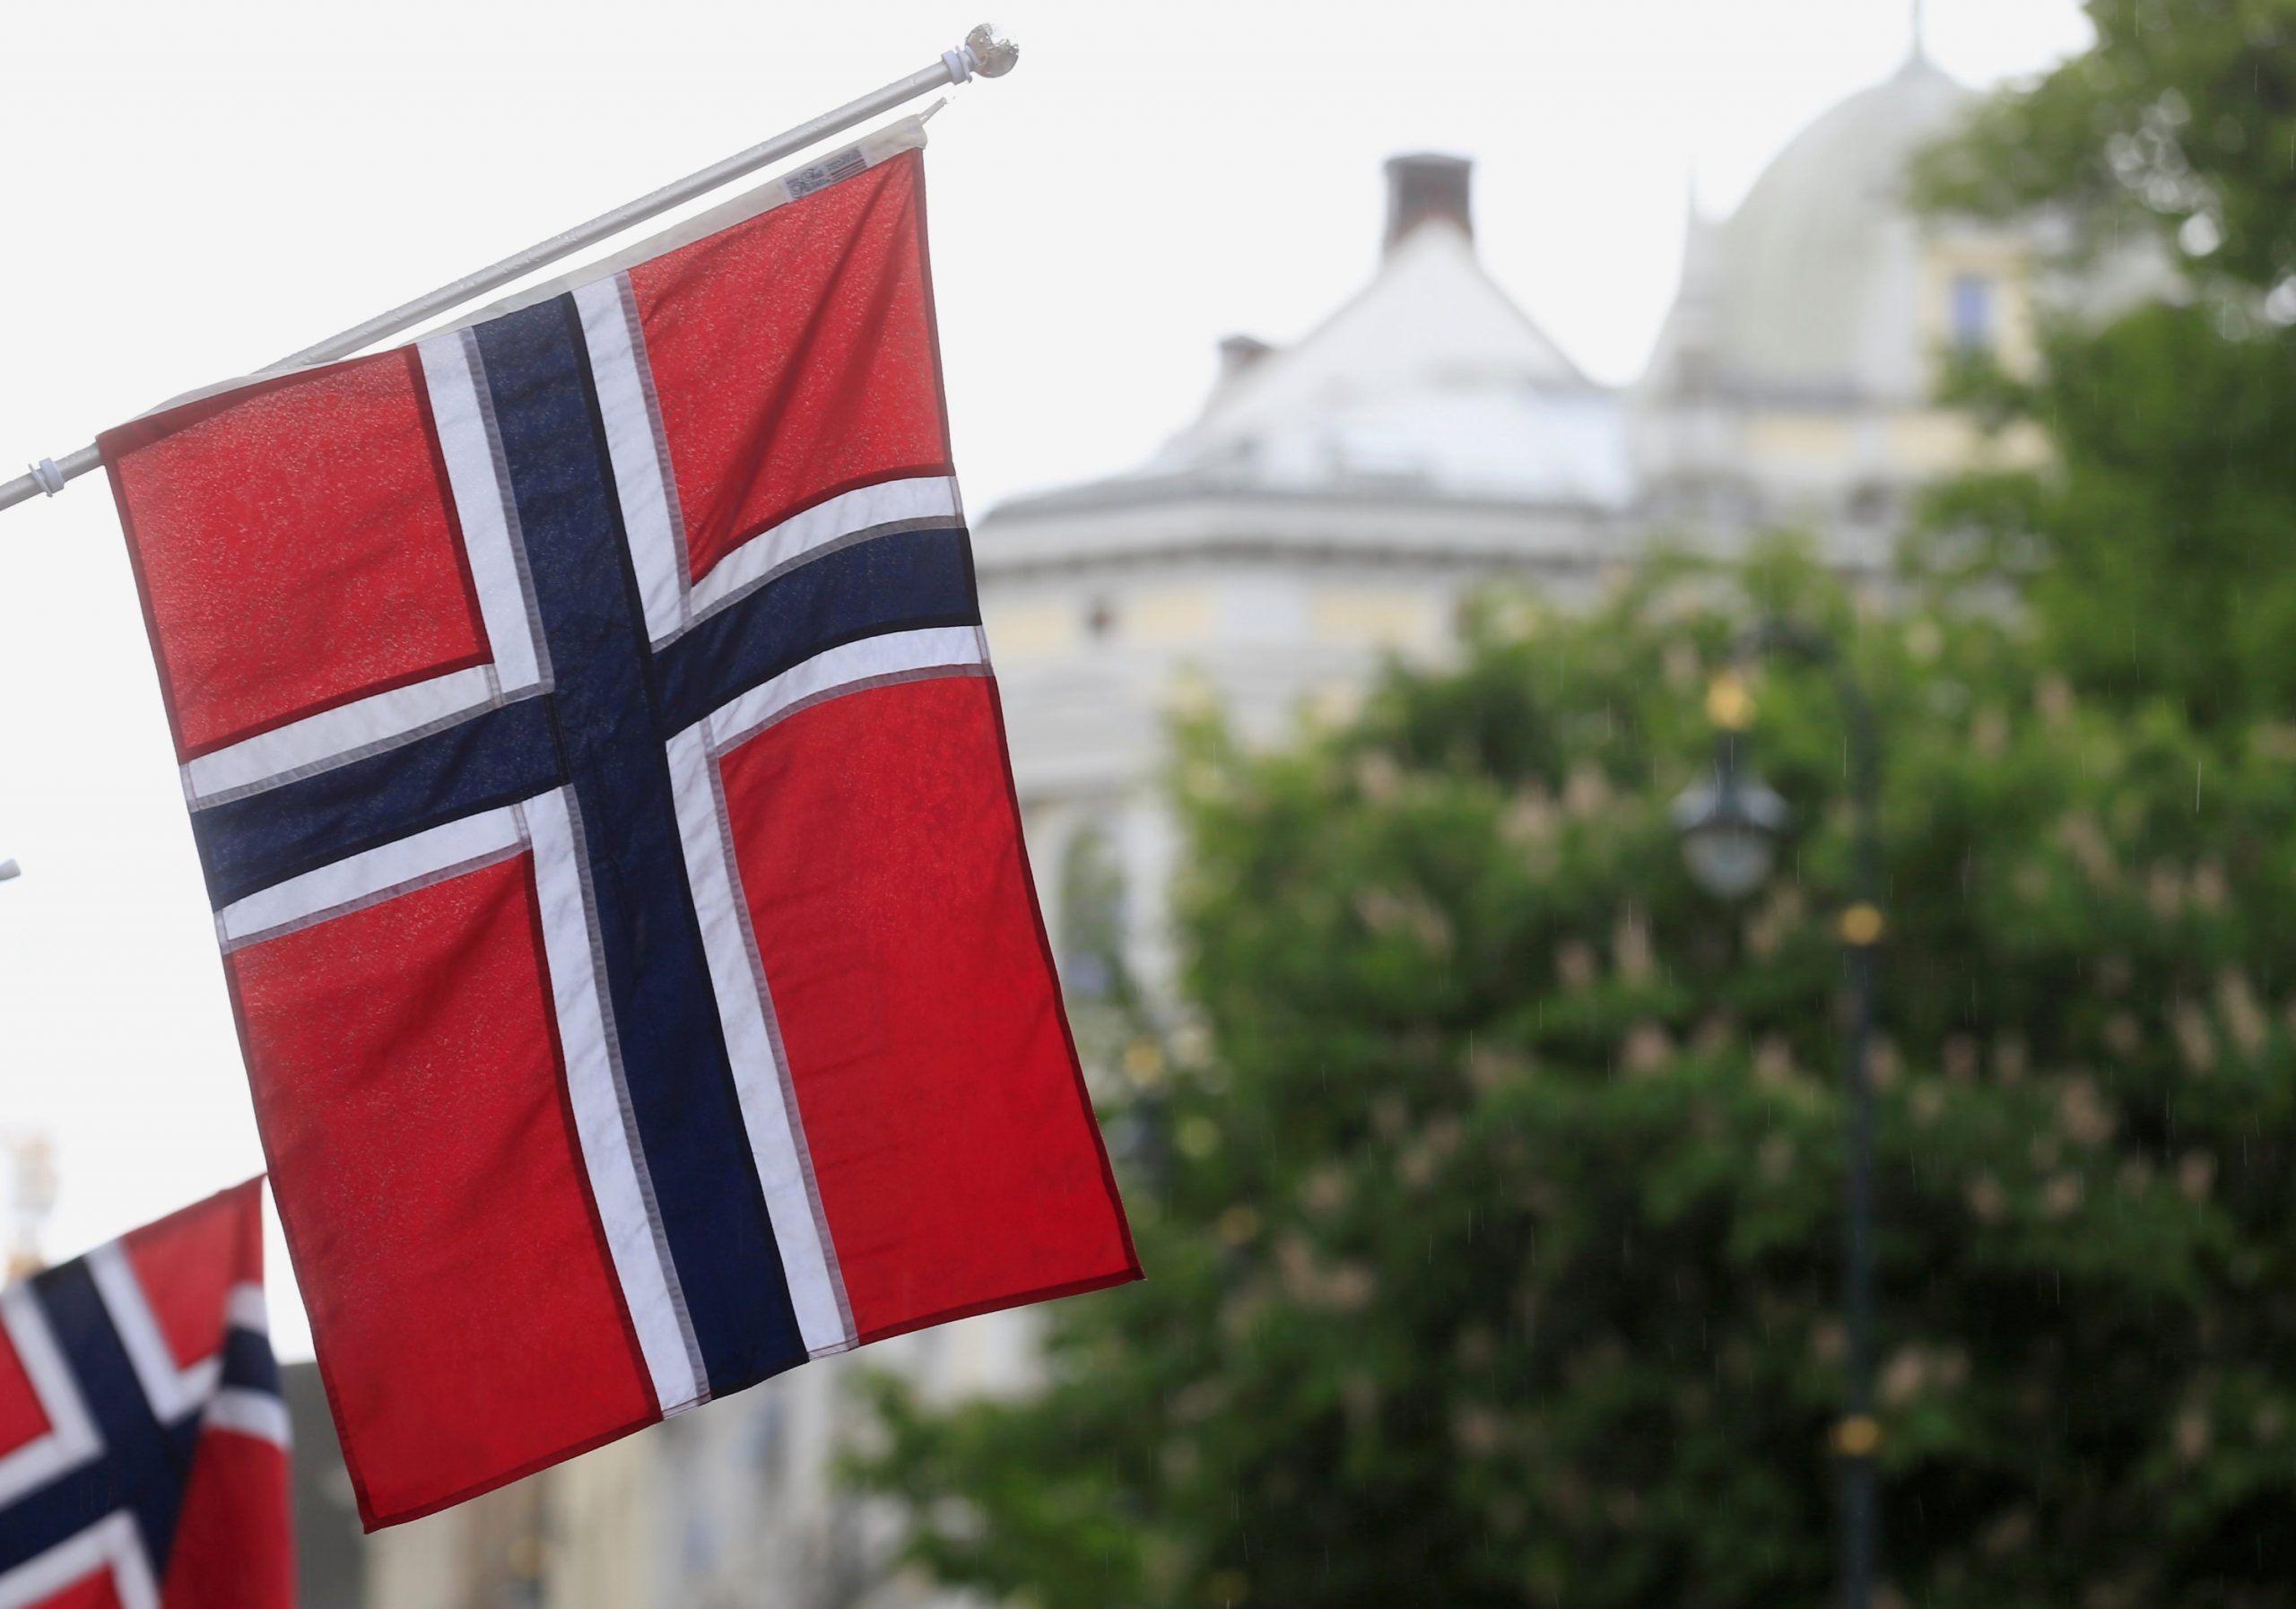 Oslo shtrëngon masat për të luftuar përhapjen e shpejtë të koronavirusit